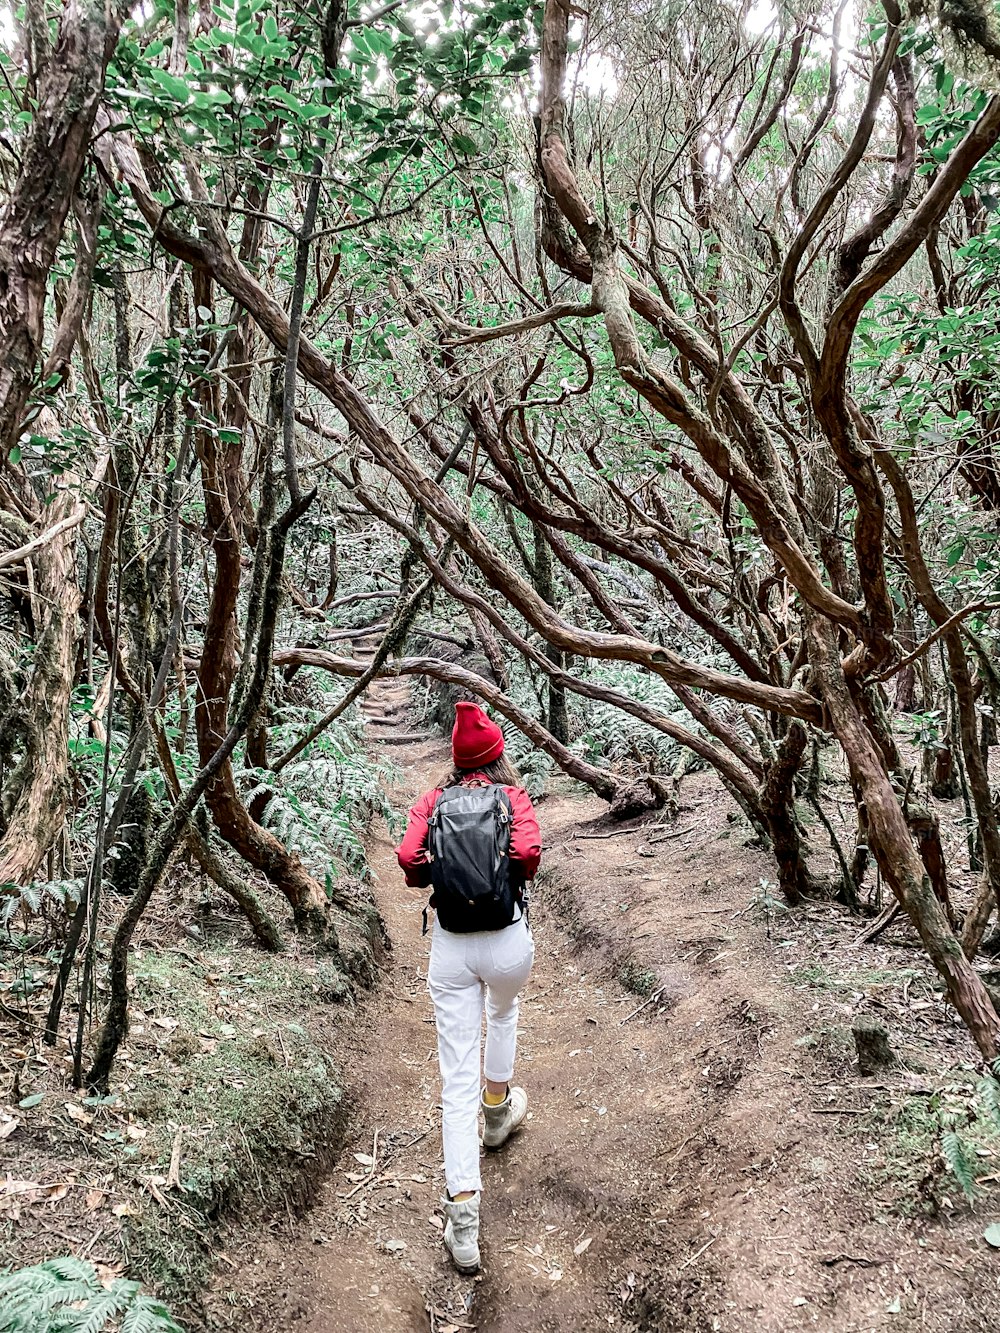 Femme randonnant avec un sac à dos dans la belle forêt tropicale, voyageant sur l’île de Tenerife, en Espagne. Image réalisée sur un téléphone portable